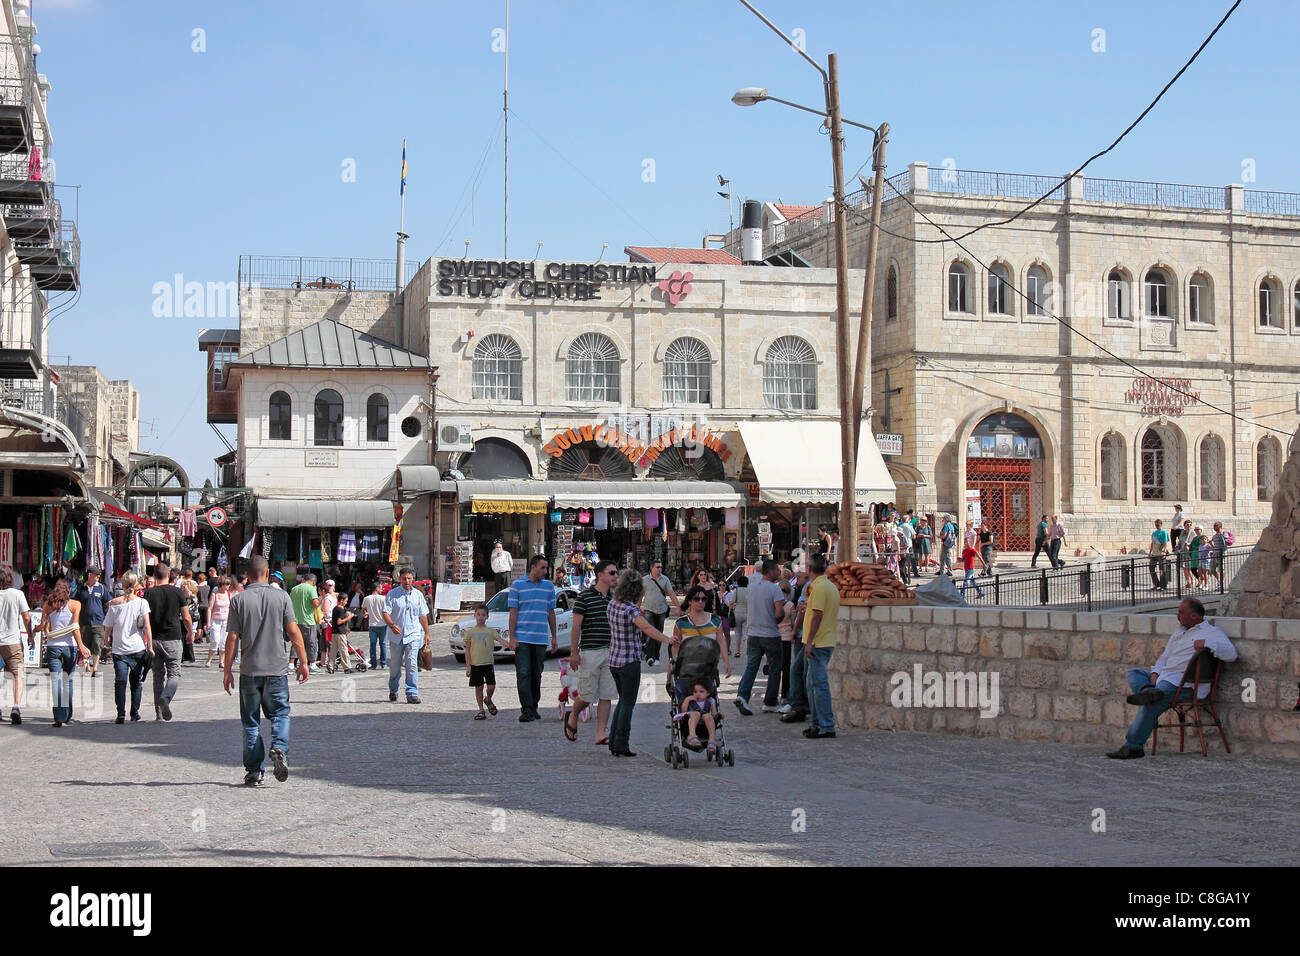 Die schwedischen christlichen Studienzentrum und Christian Information Centre in Jaffa-Tor, Jerusalem Stockfoto